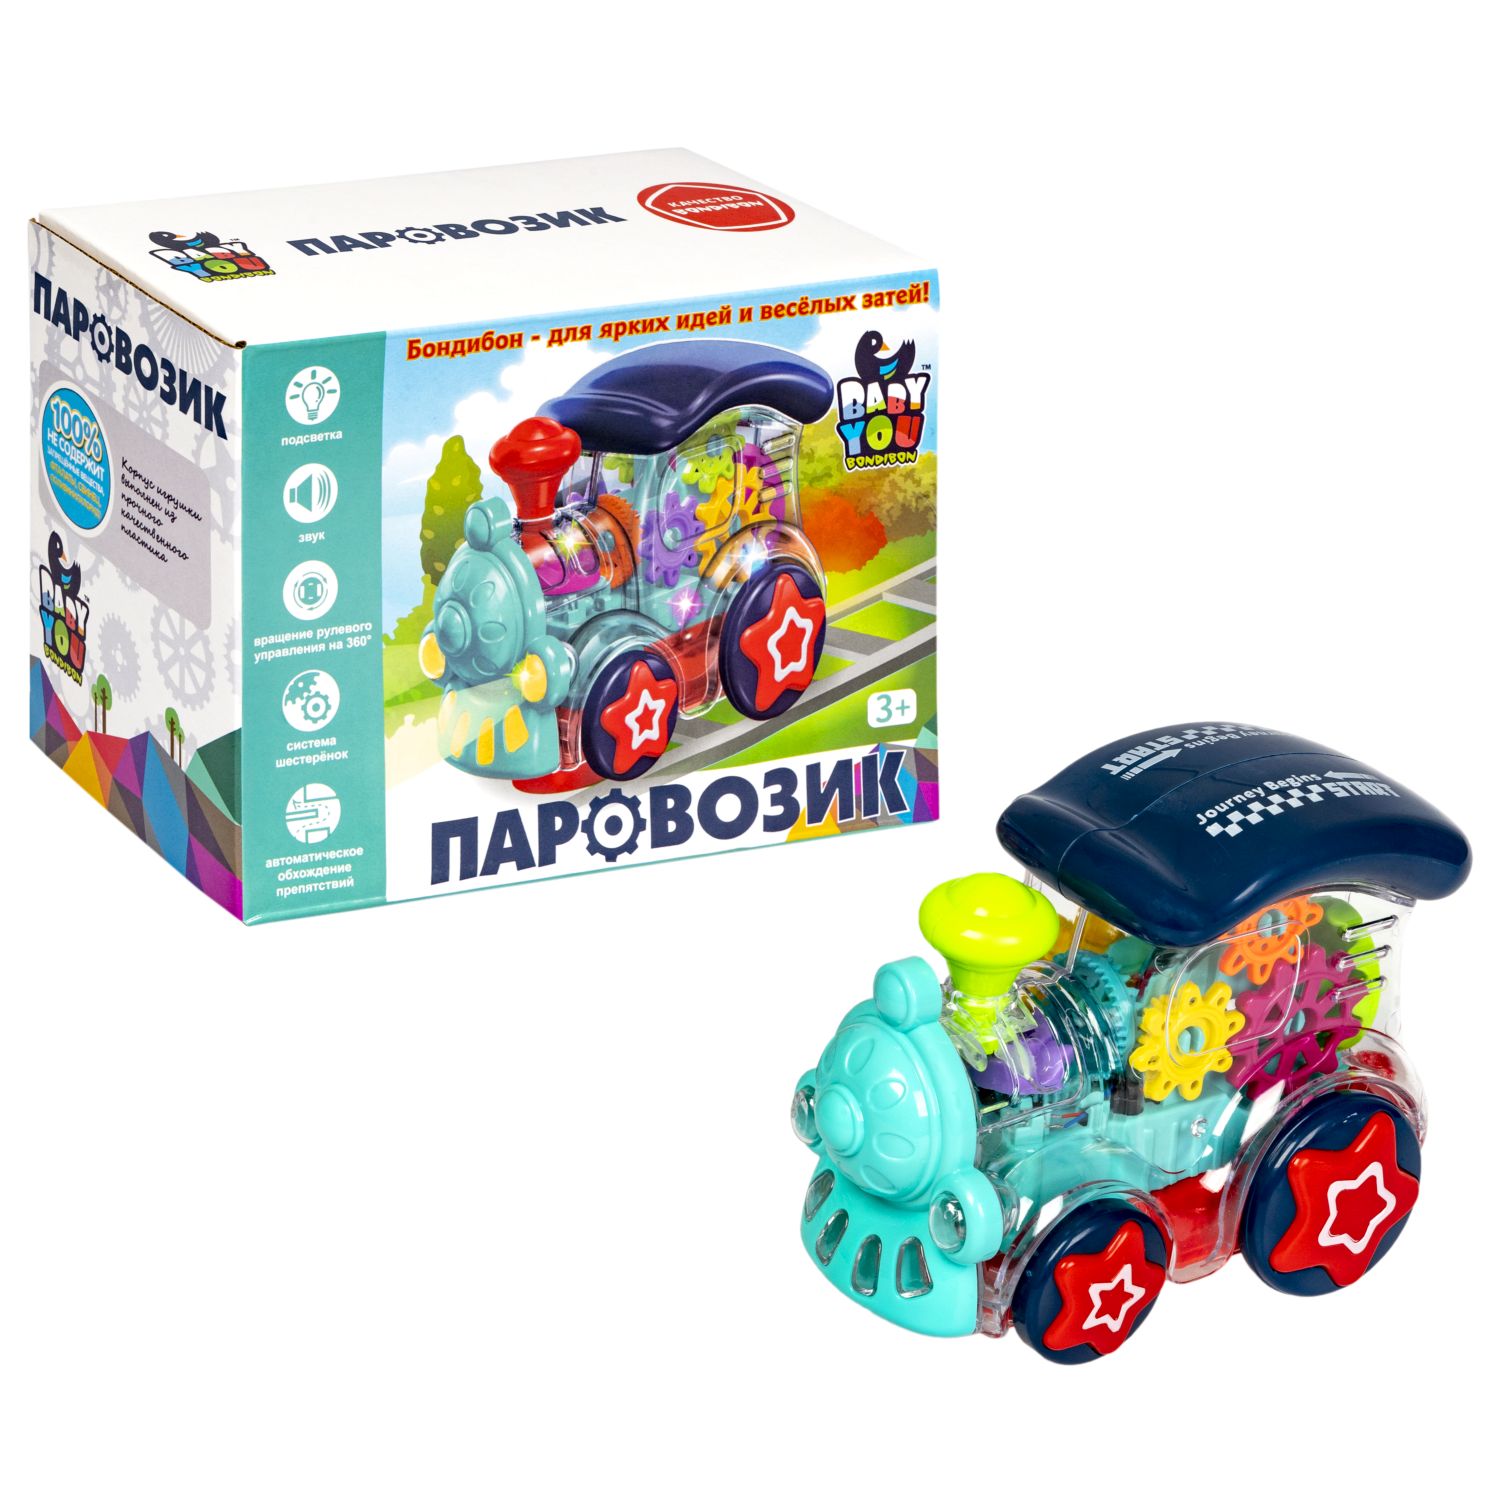 Музыкальная игрушка BONDIBON Паровозик с шестеренками со световыми эффектами и прозрачным корпусом серия Baby You - фото 5